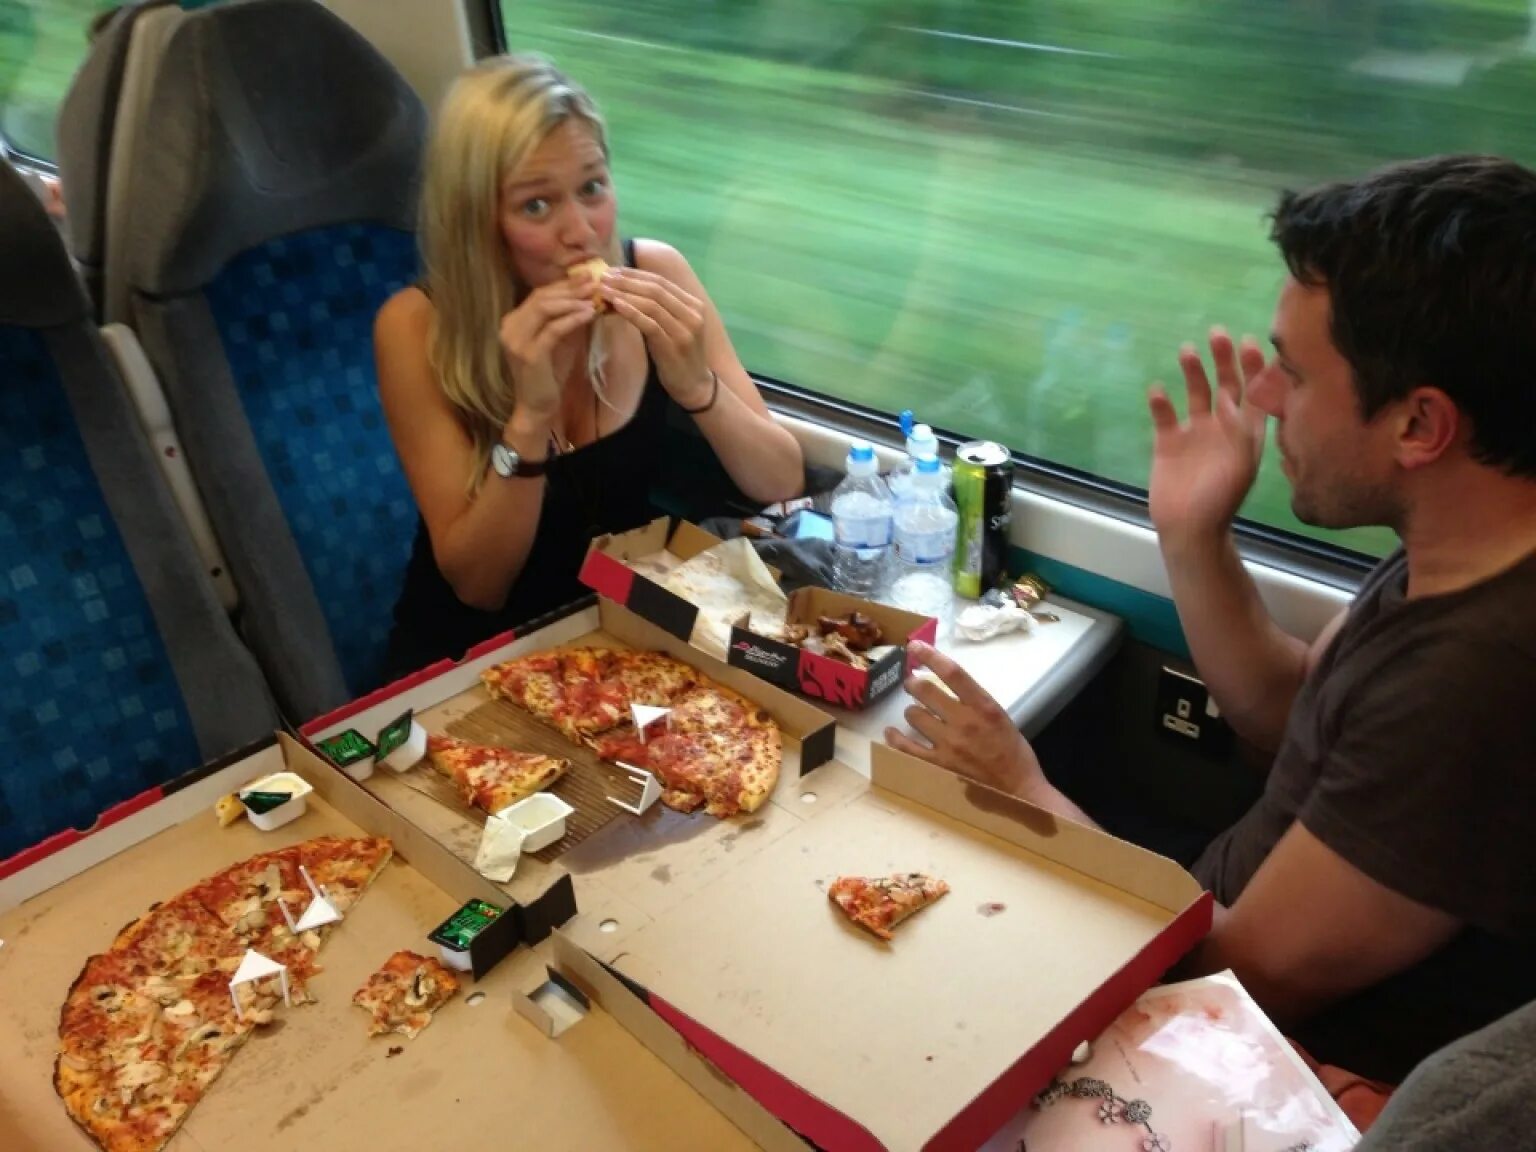 Еда в вагоне. Питание в поезде. Столик с едой в поезде. Еда в поезде ресторане. В вагоне ресторане поезда на ужин предлагается